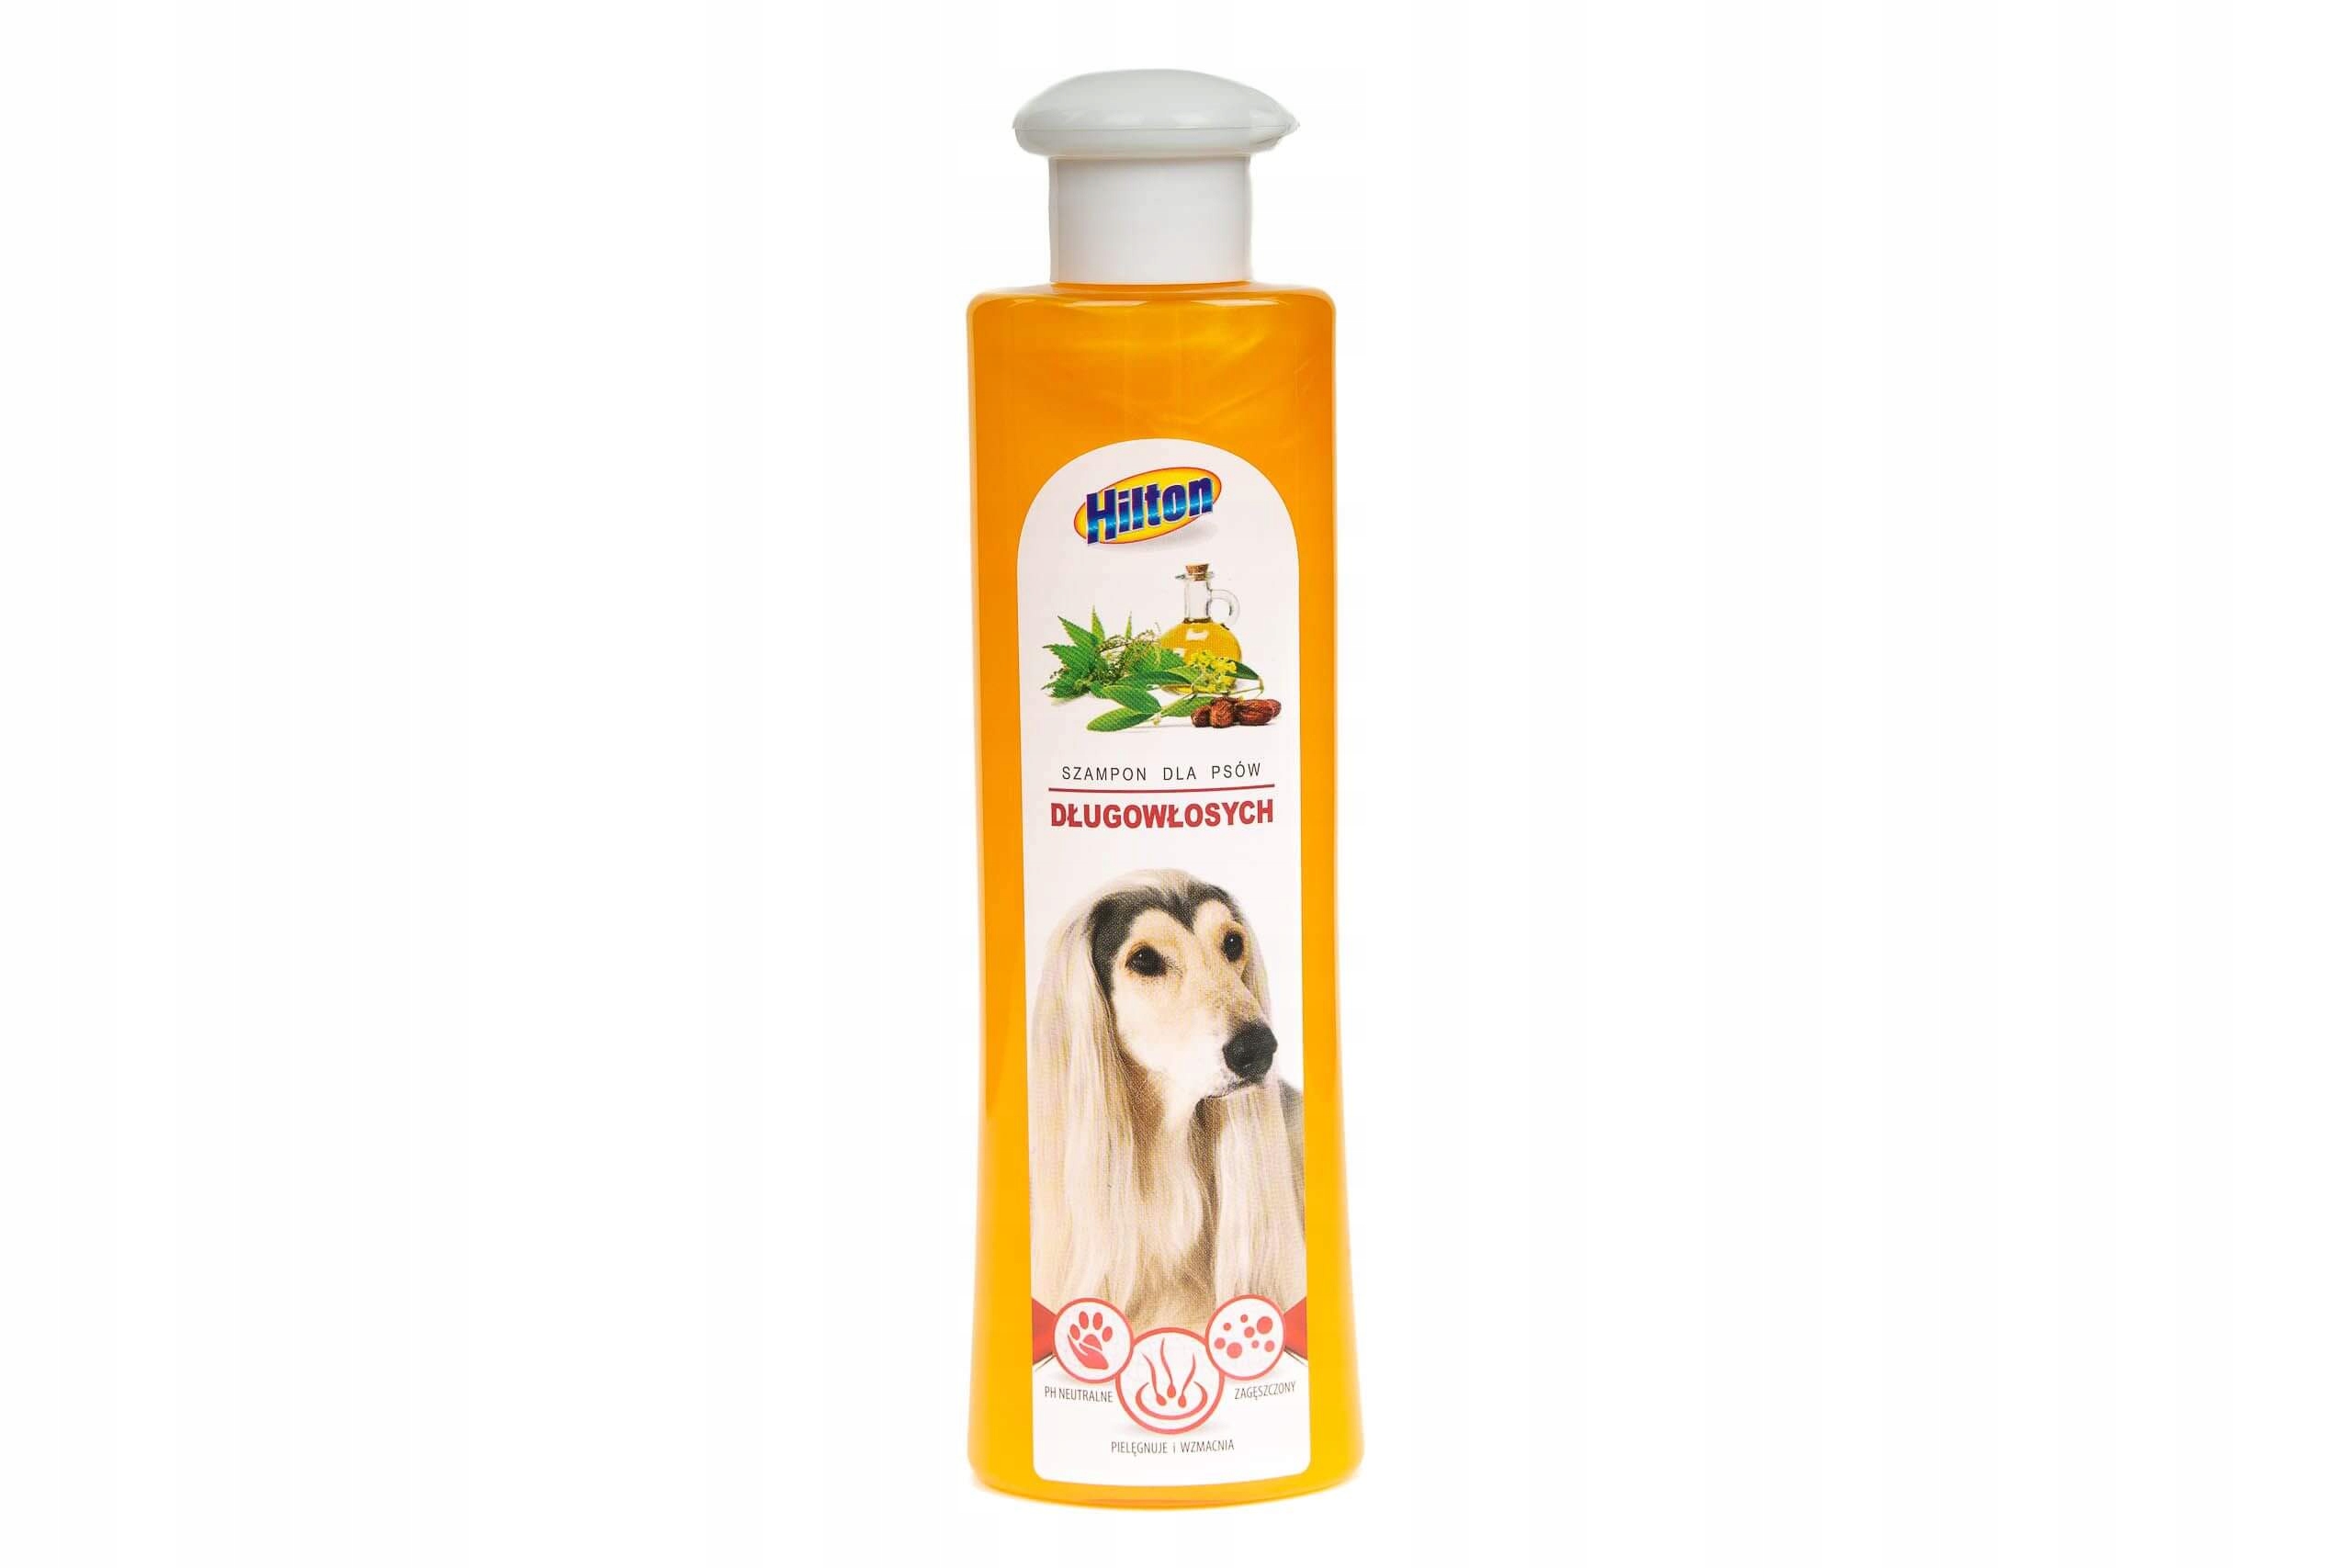 szampon dla psow dlugowlosych allegro